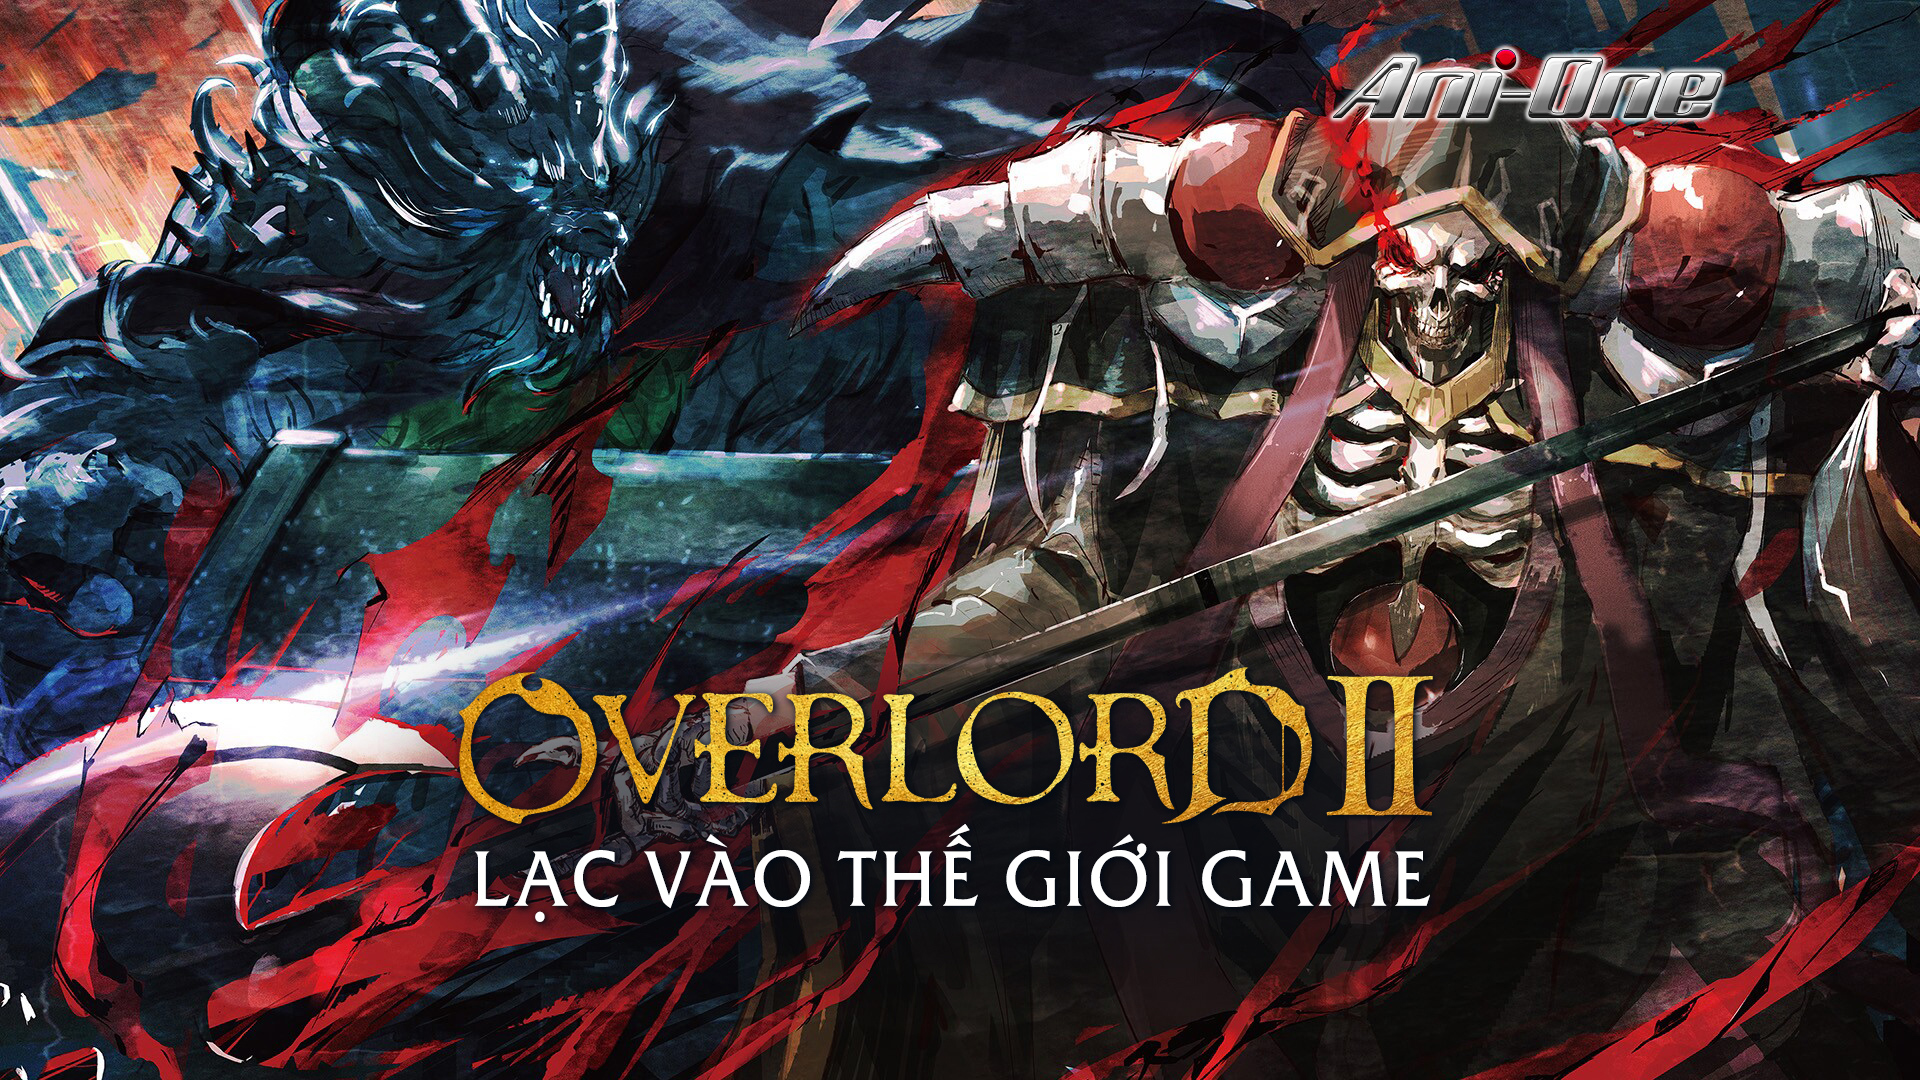 Overlord: Lạc Vào Thế Giới Game - Phần 2 - 13 Tập | VieON